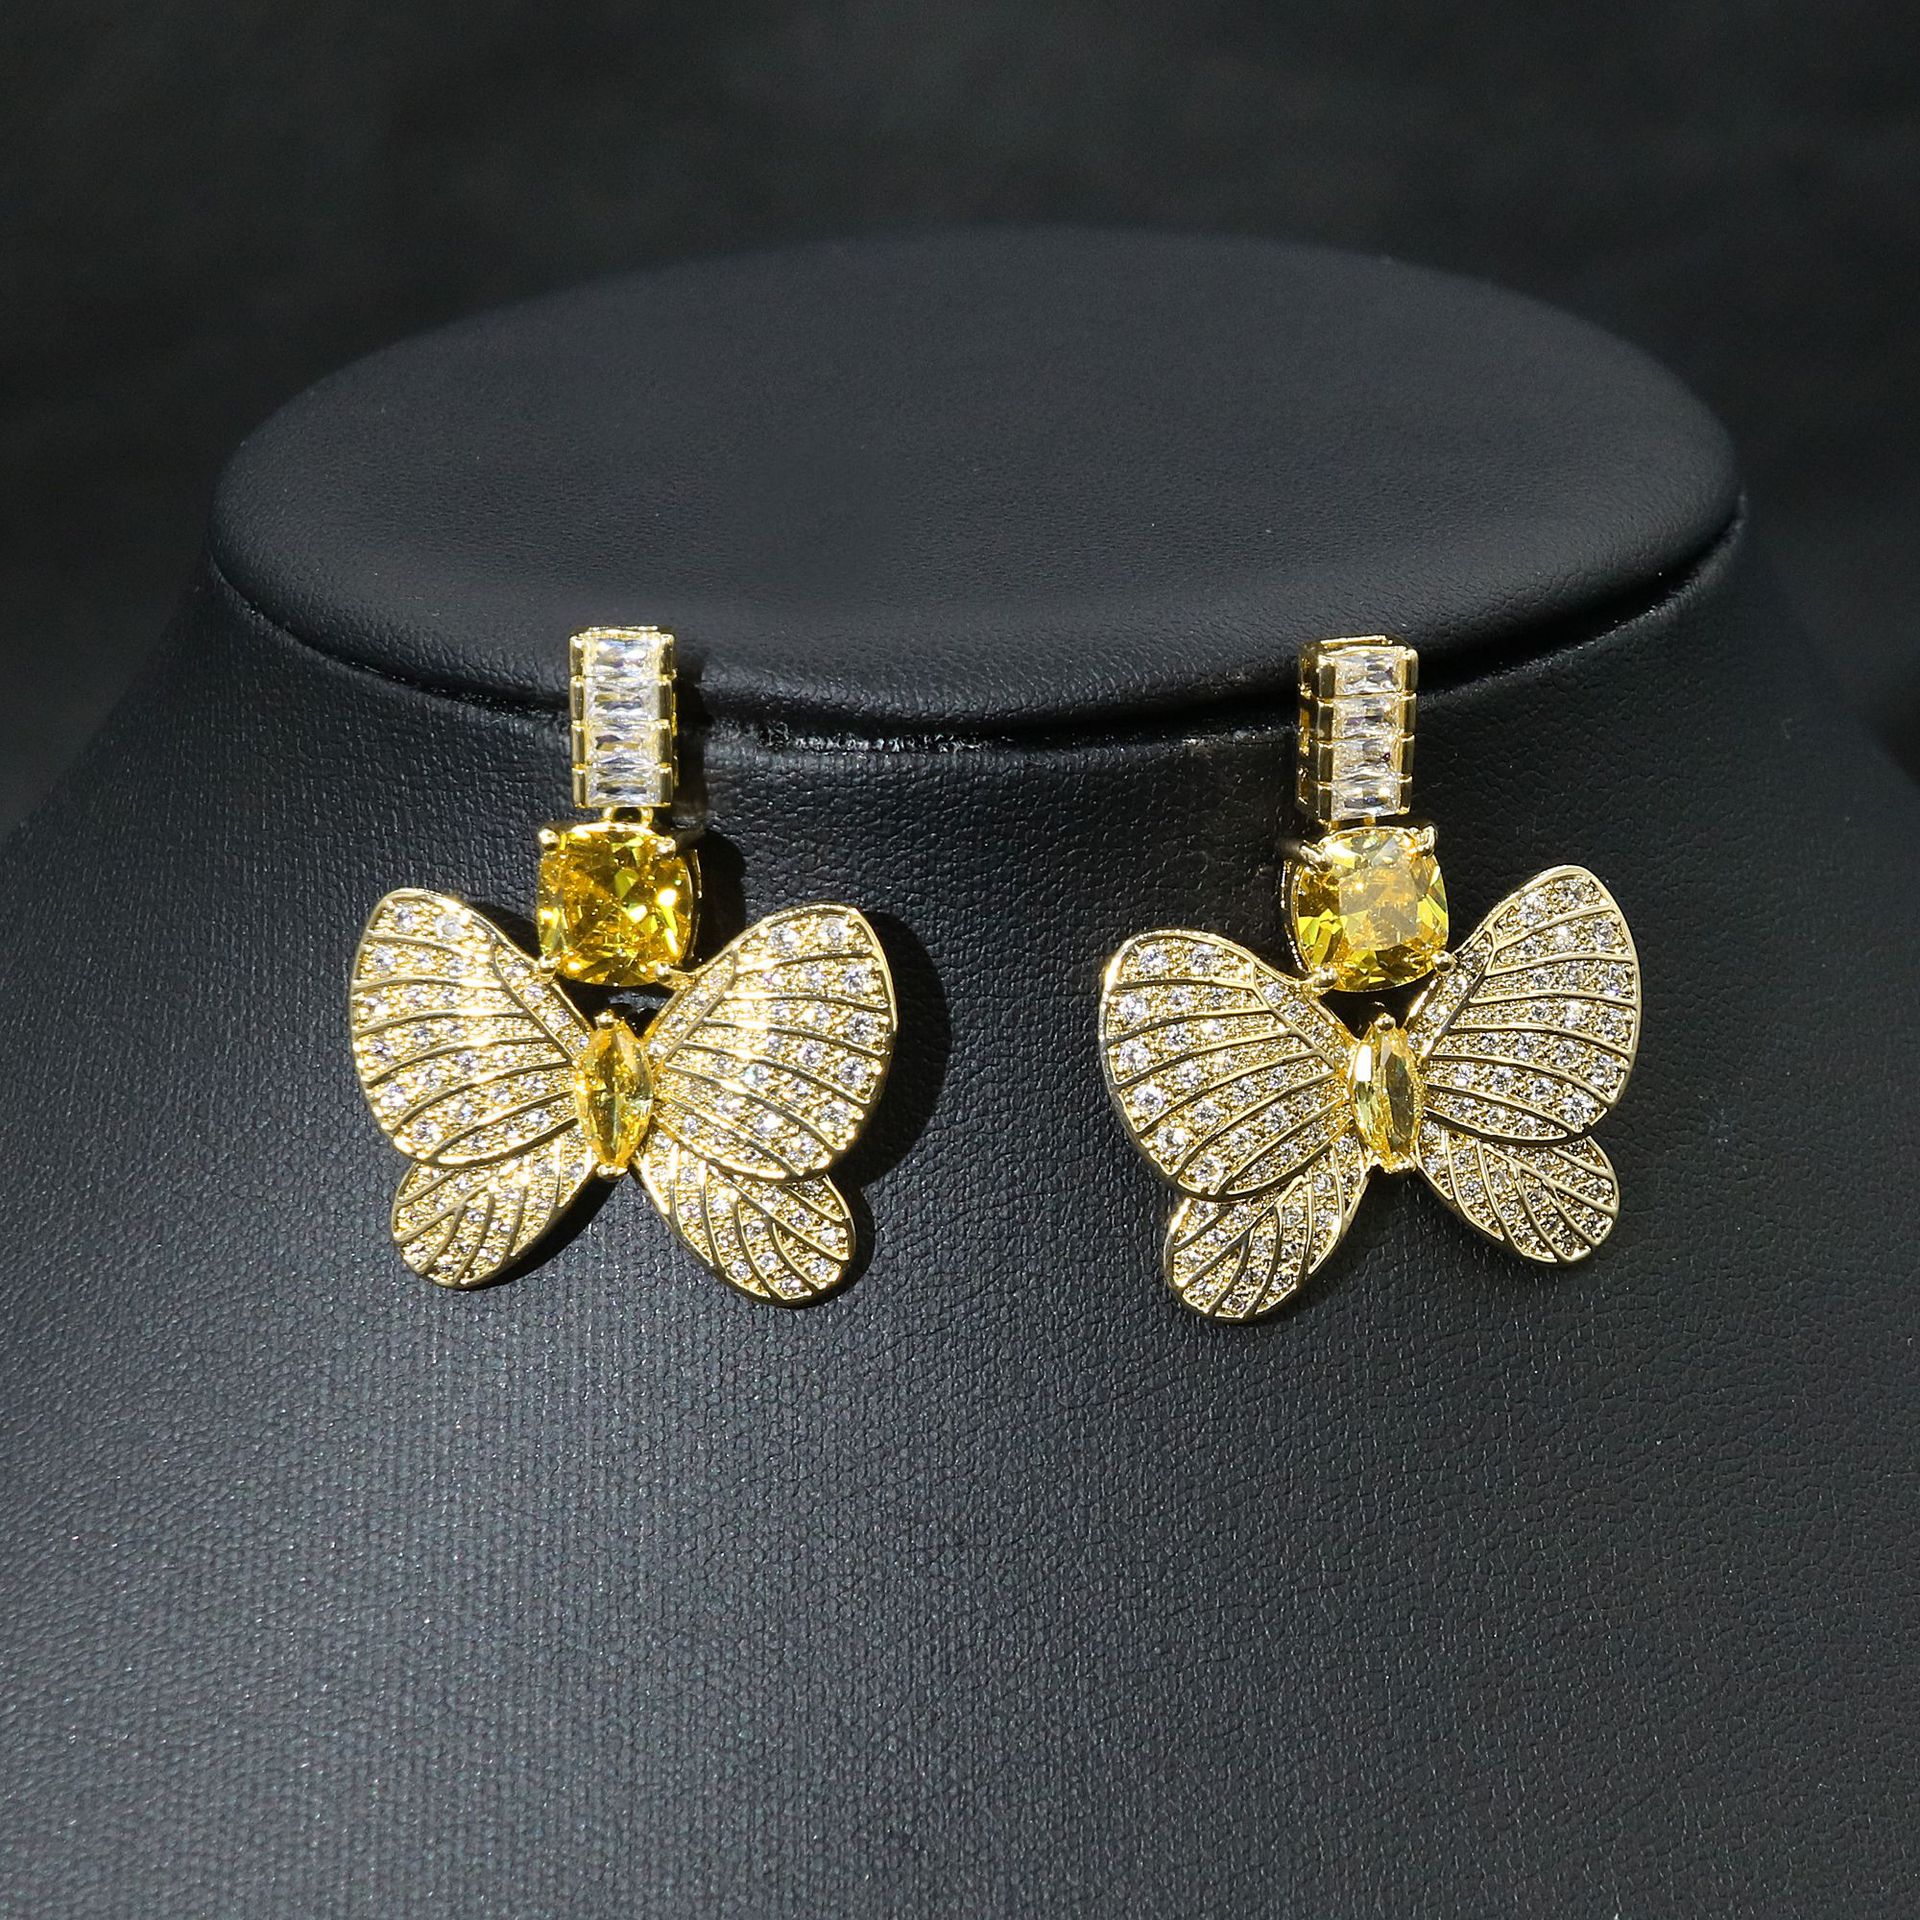 2:Yellow zirconium earrings in gold